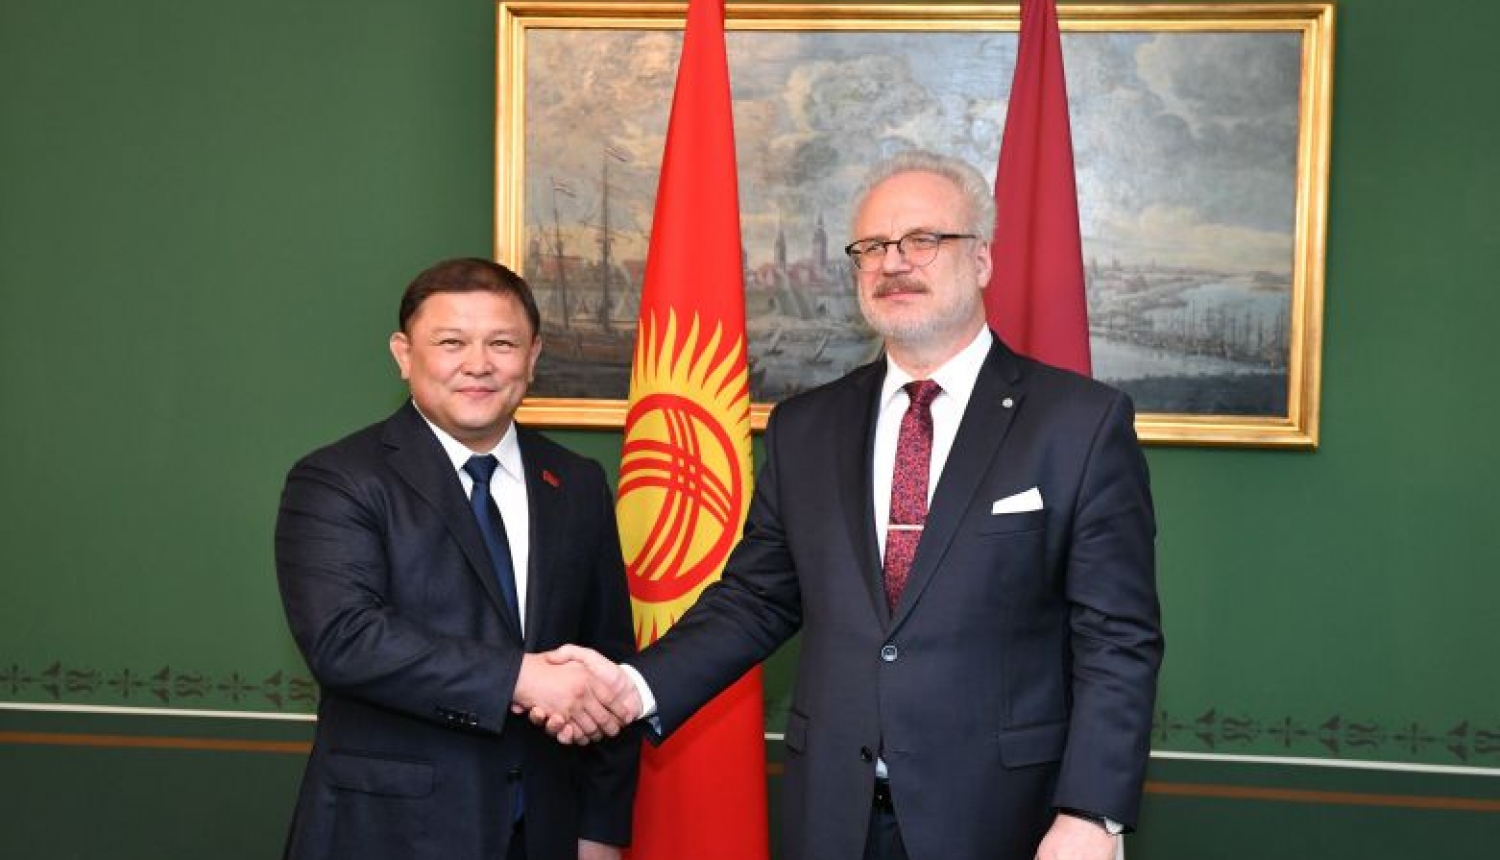 Valsts prezidents: Latvija novērtē Kirgizstānas centienus veidot ciešākas attiecības